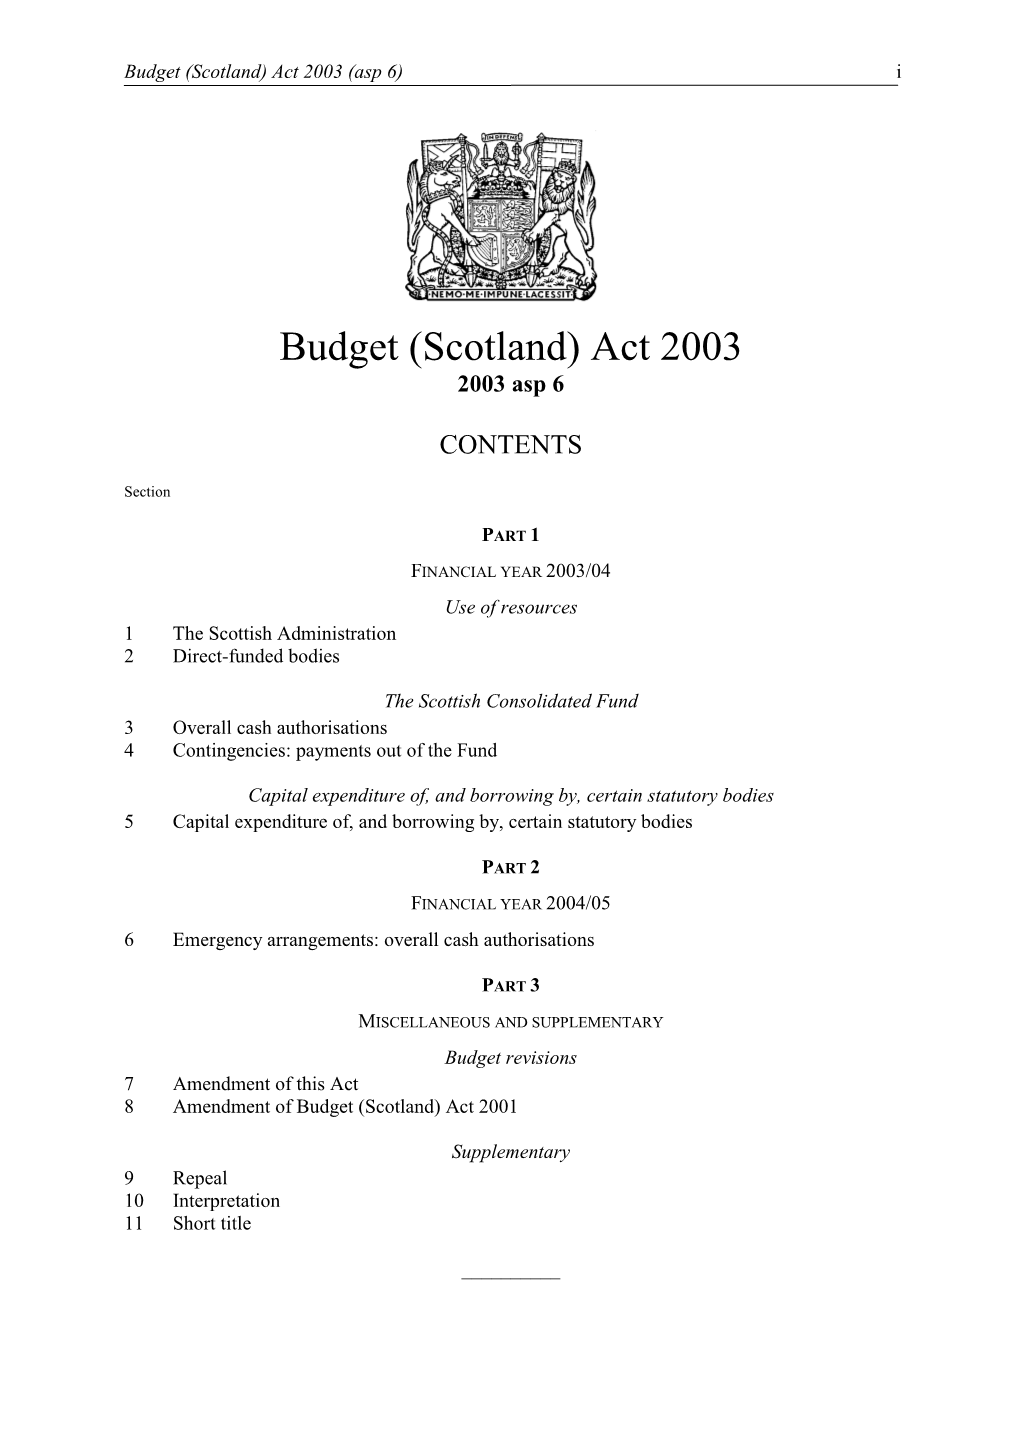 Budget (Scotland) Act 2003 (Asp 6) I